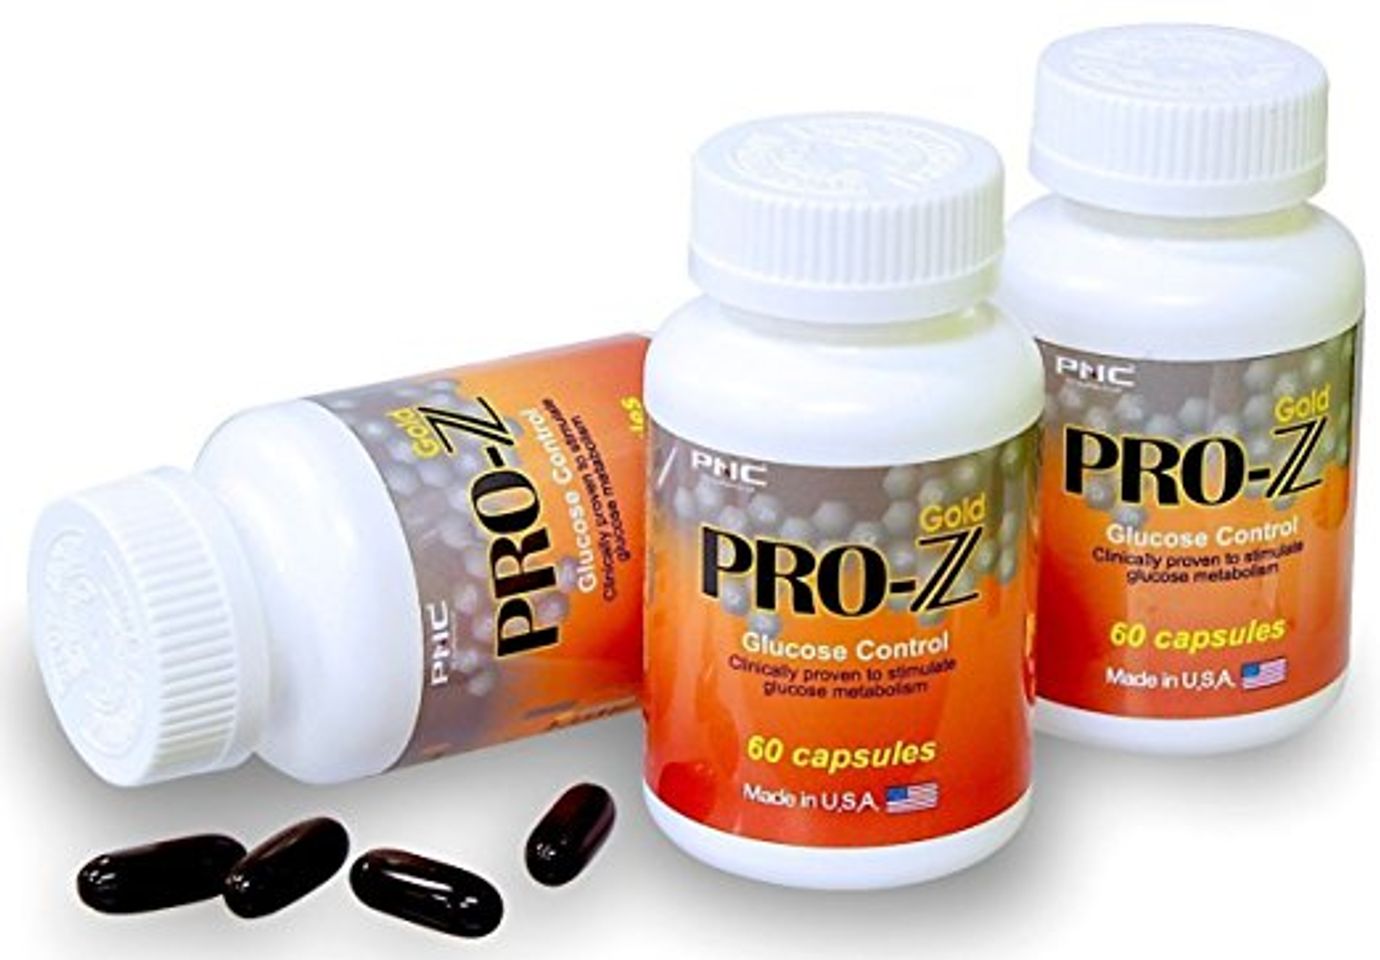 Viên Uống Pro Z Gold Glucose Control cải thiện tình trạng kháng insulin của cơ thể người bệnh tiểu đường